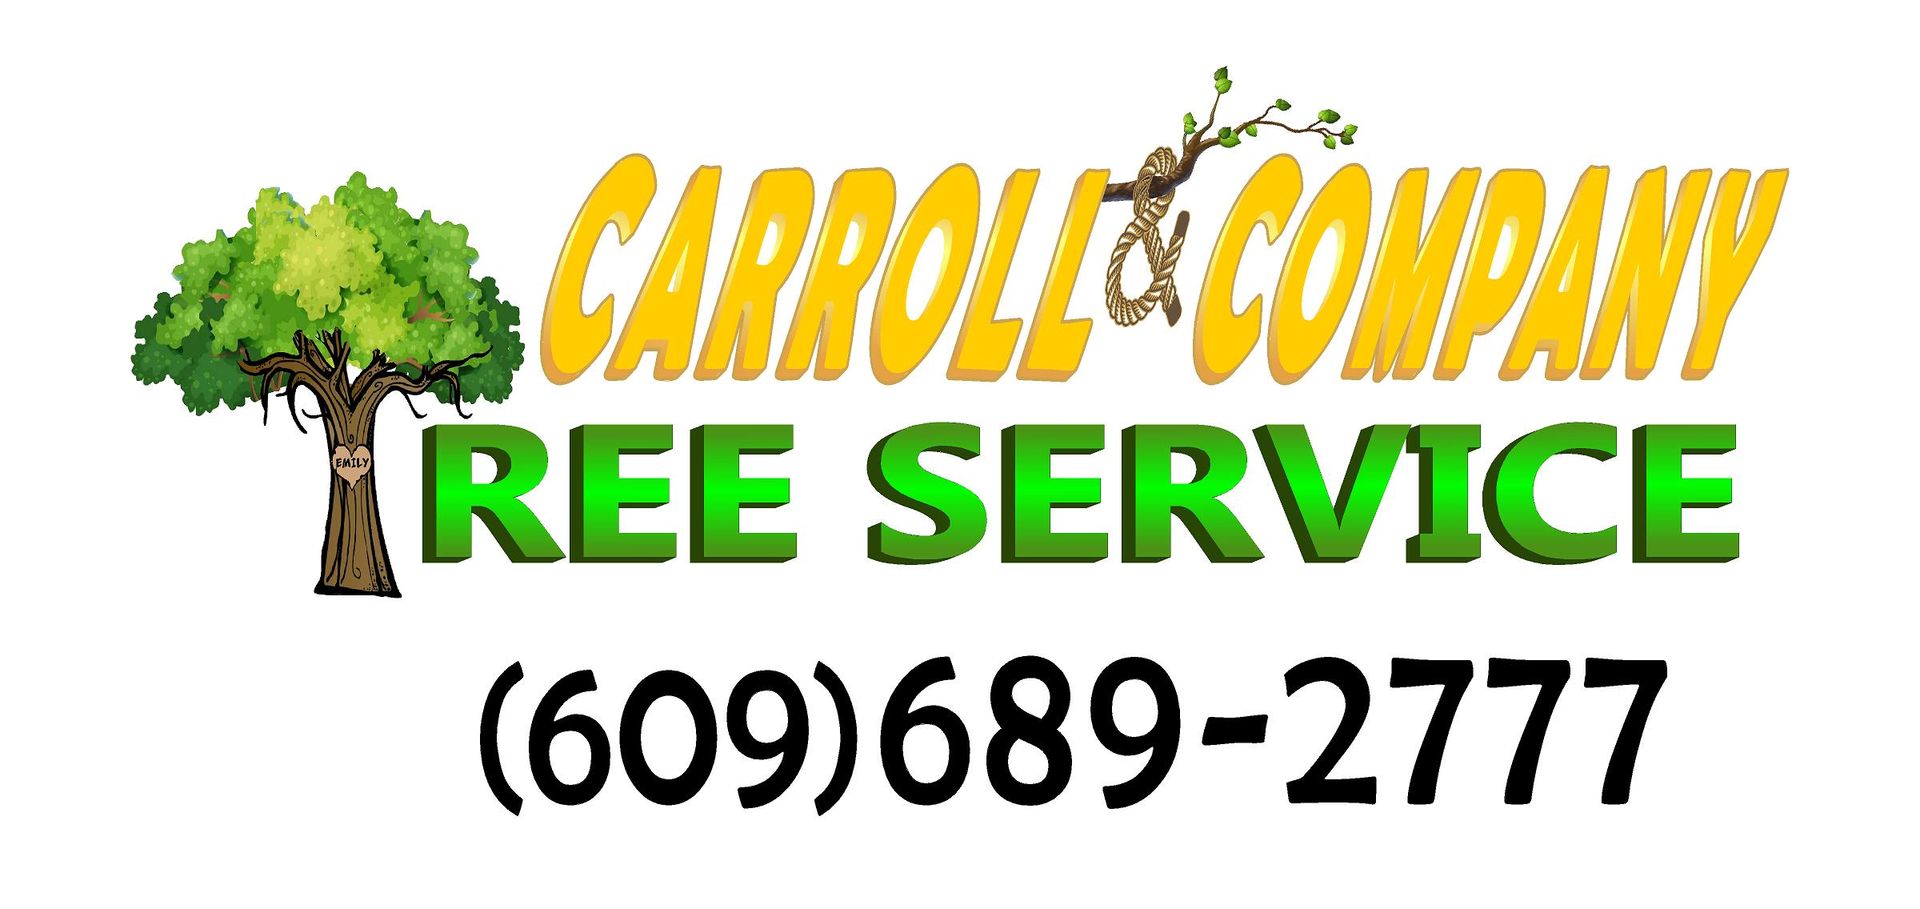 Carroll And Company Tree Service